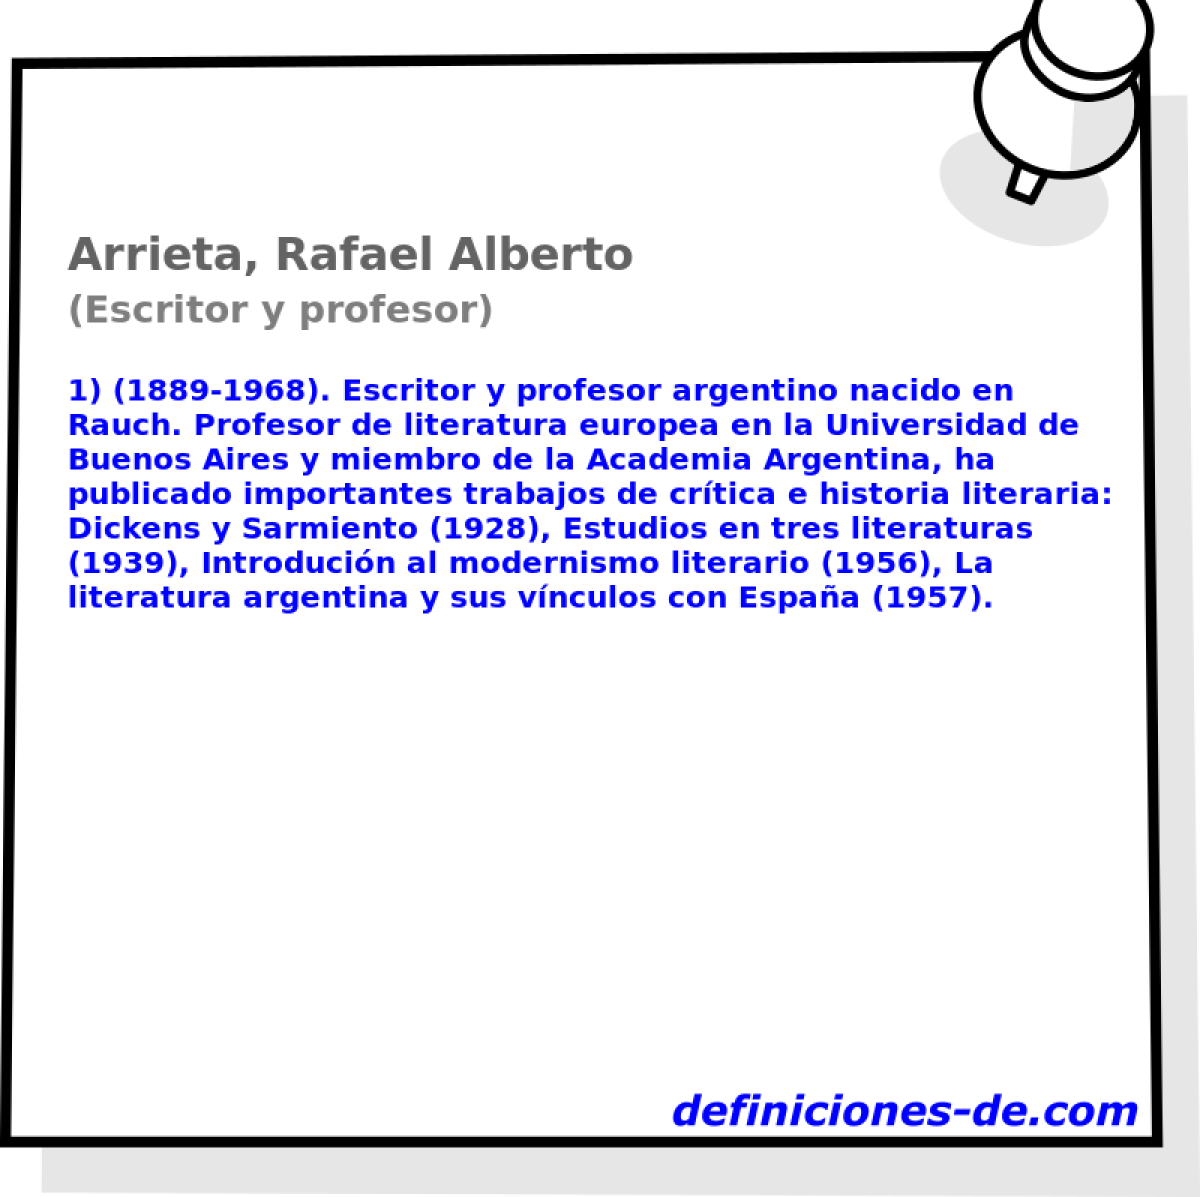 Arrieta, Rafael Alberto (Escritor y profesor)